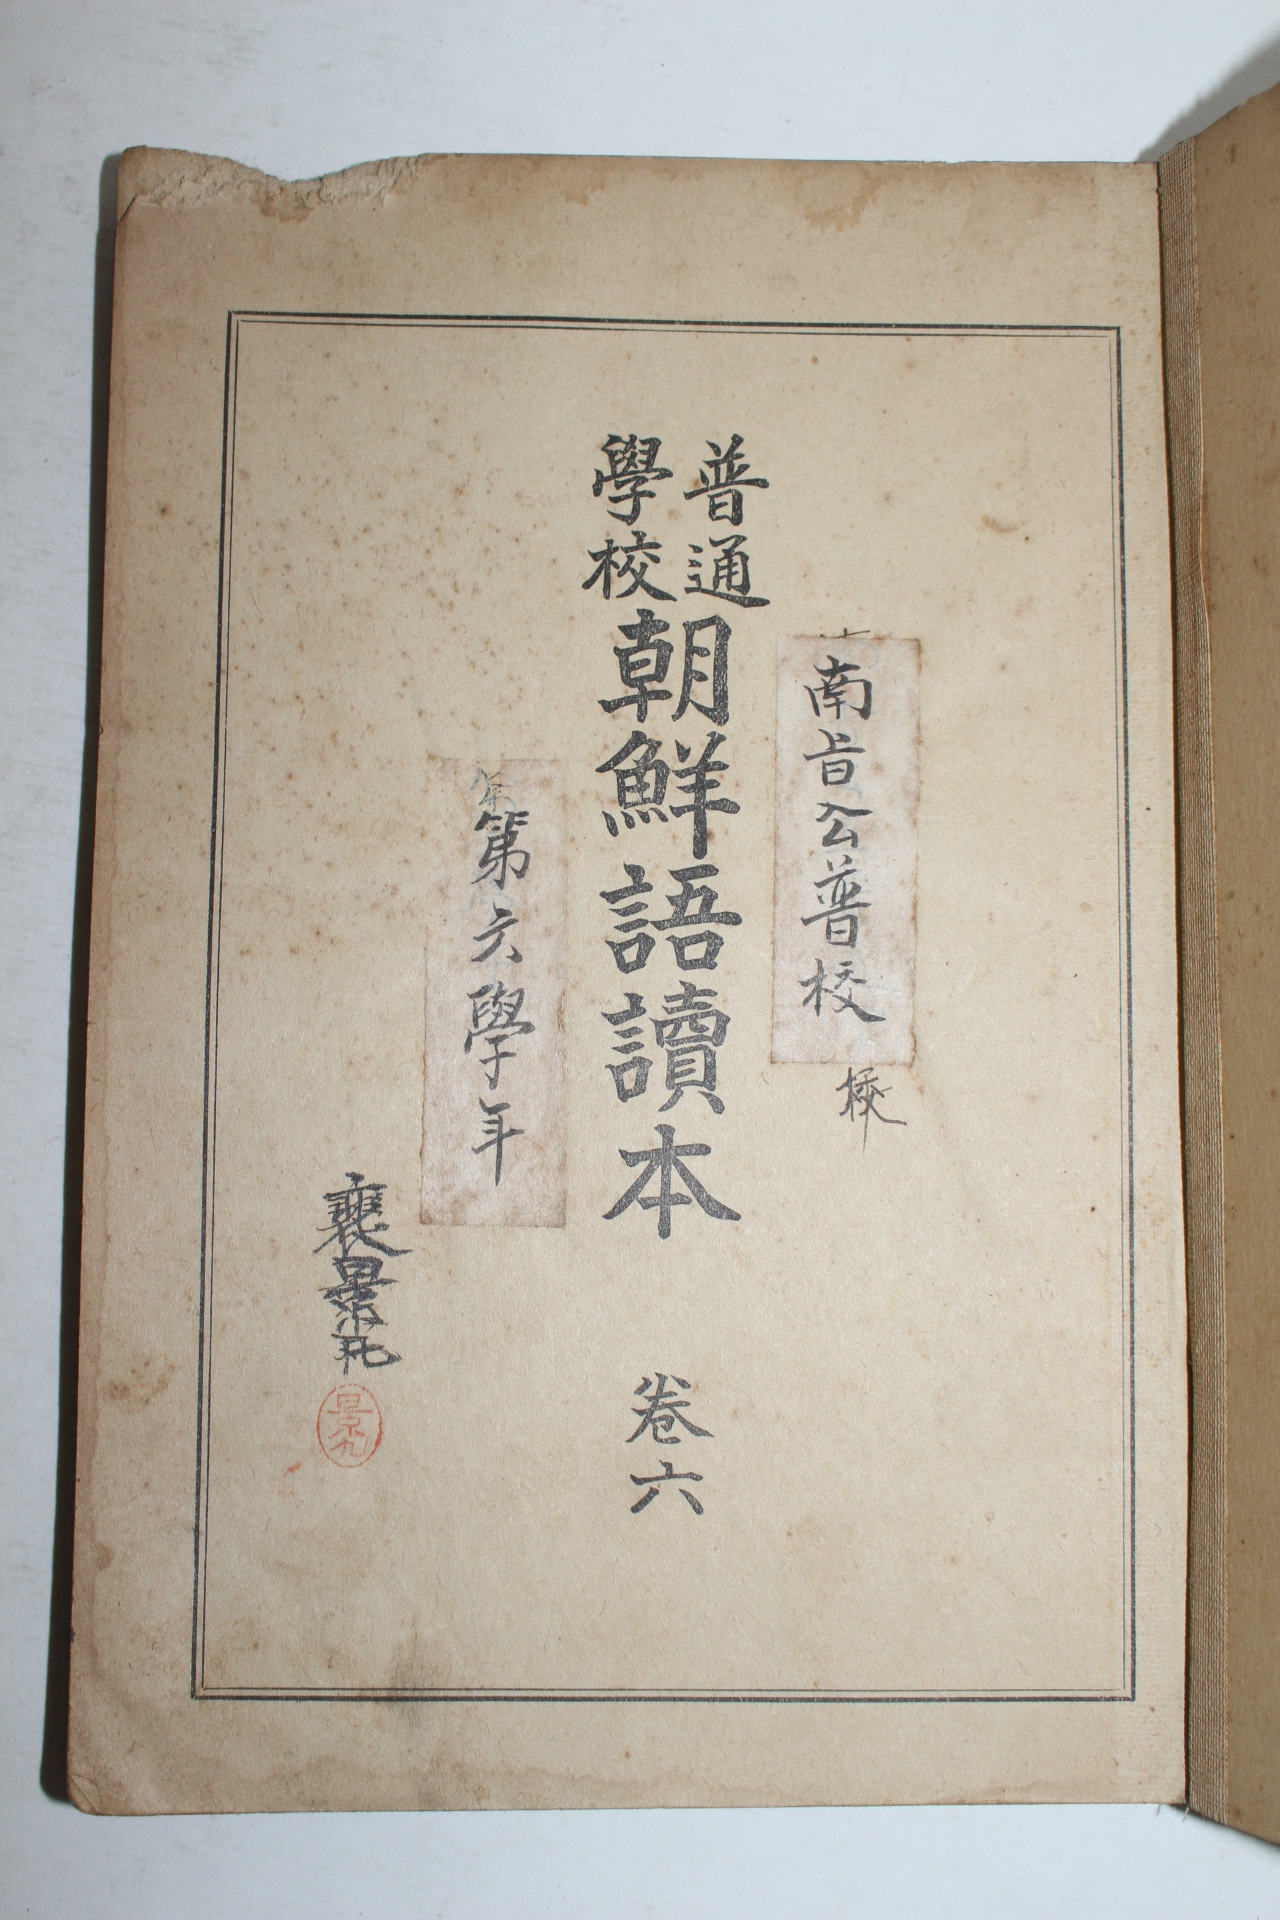 1924년 보통학교 조선어독본(朝鮮語讀本)권6 1책